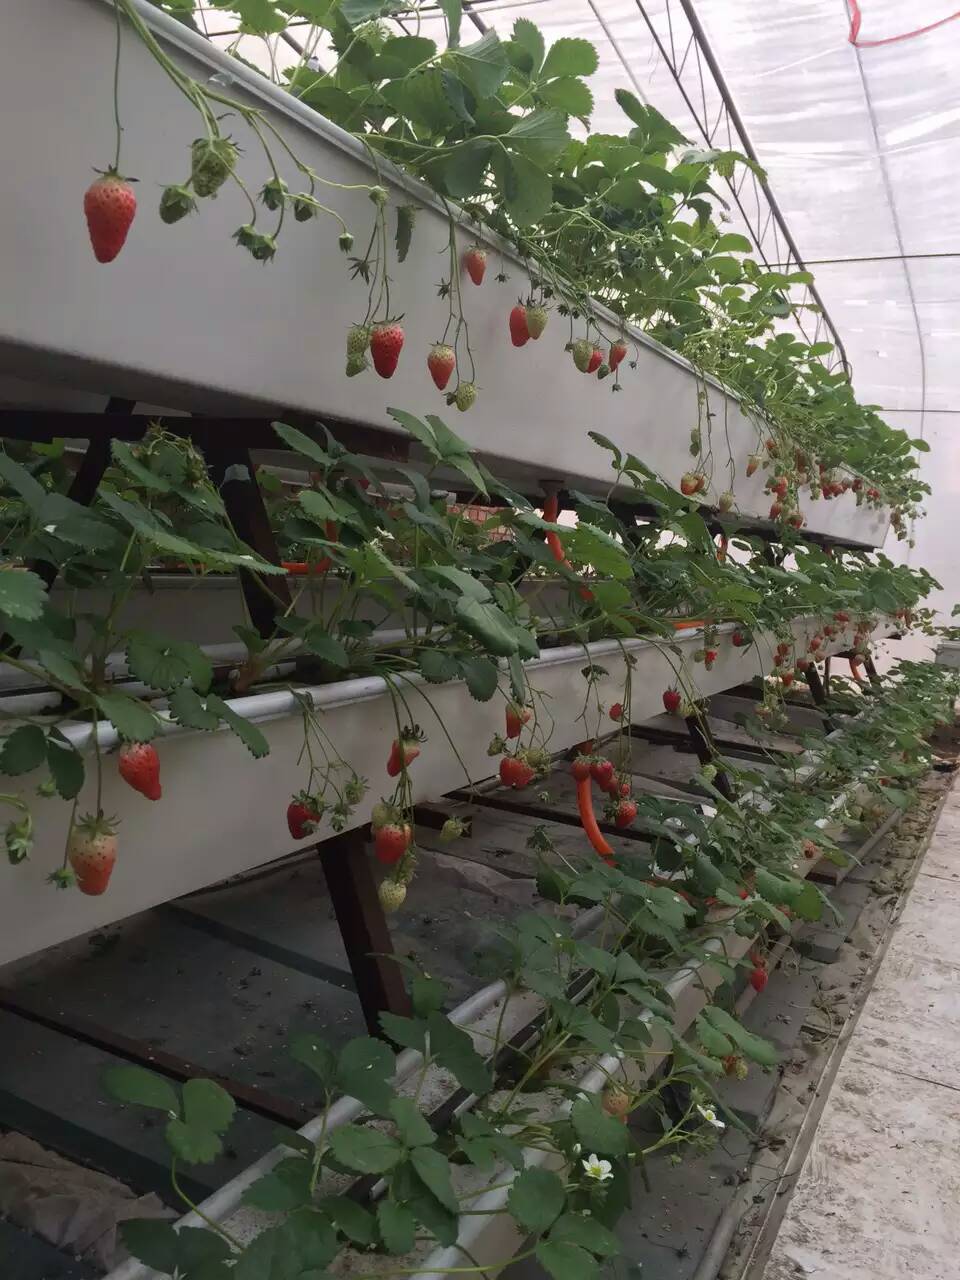 莱芜草莓立体种植槽有限公司 厂家直销草莓槽 草莓种植槽  莱芜草莓立体种植槽，蓝莓立体种植 专供莱芜草莓槽，厂家直销